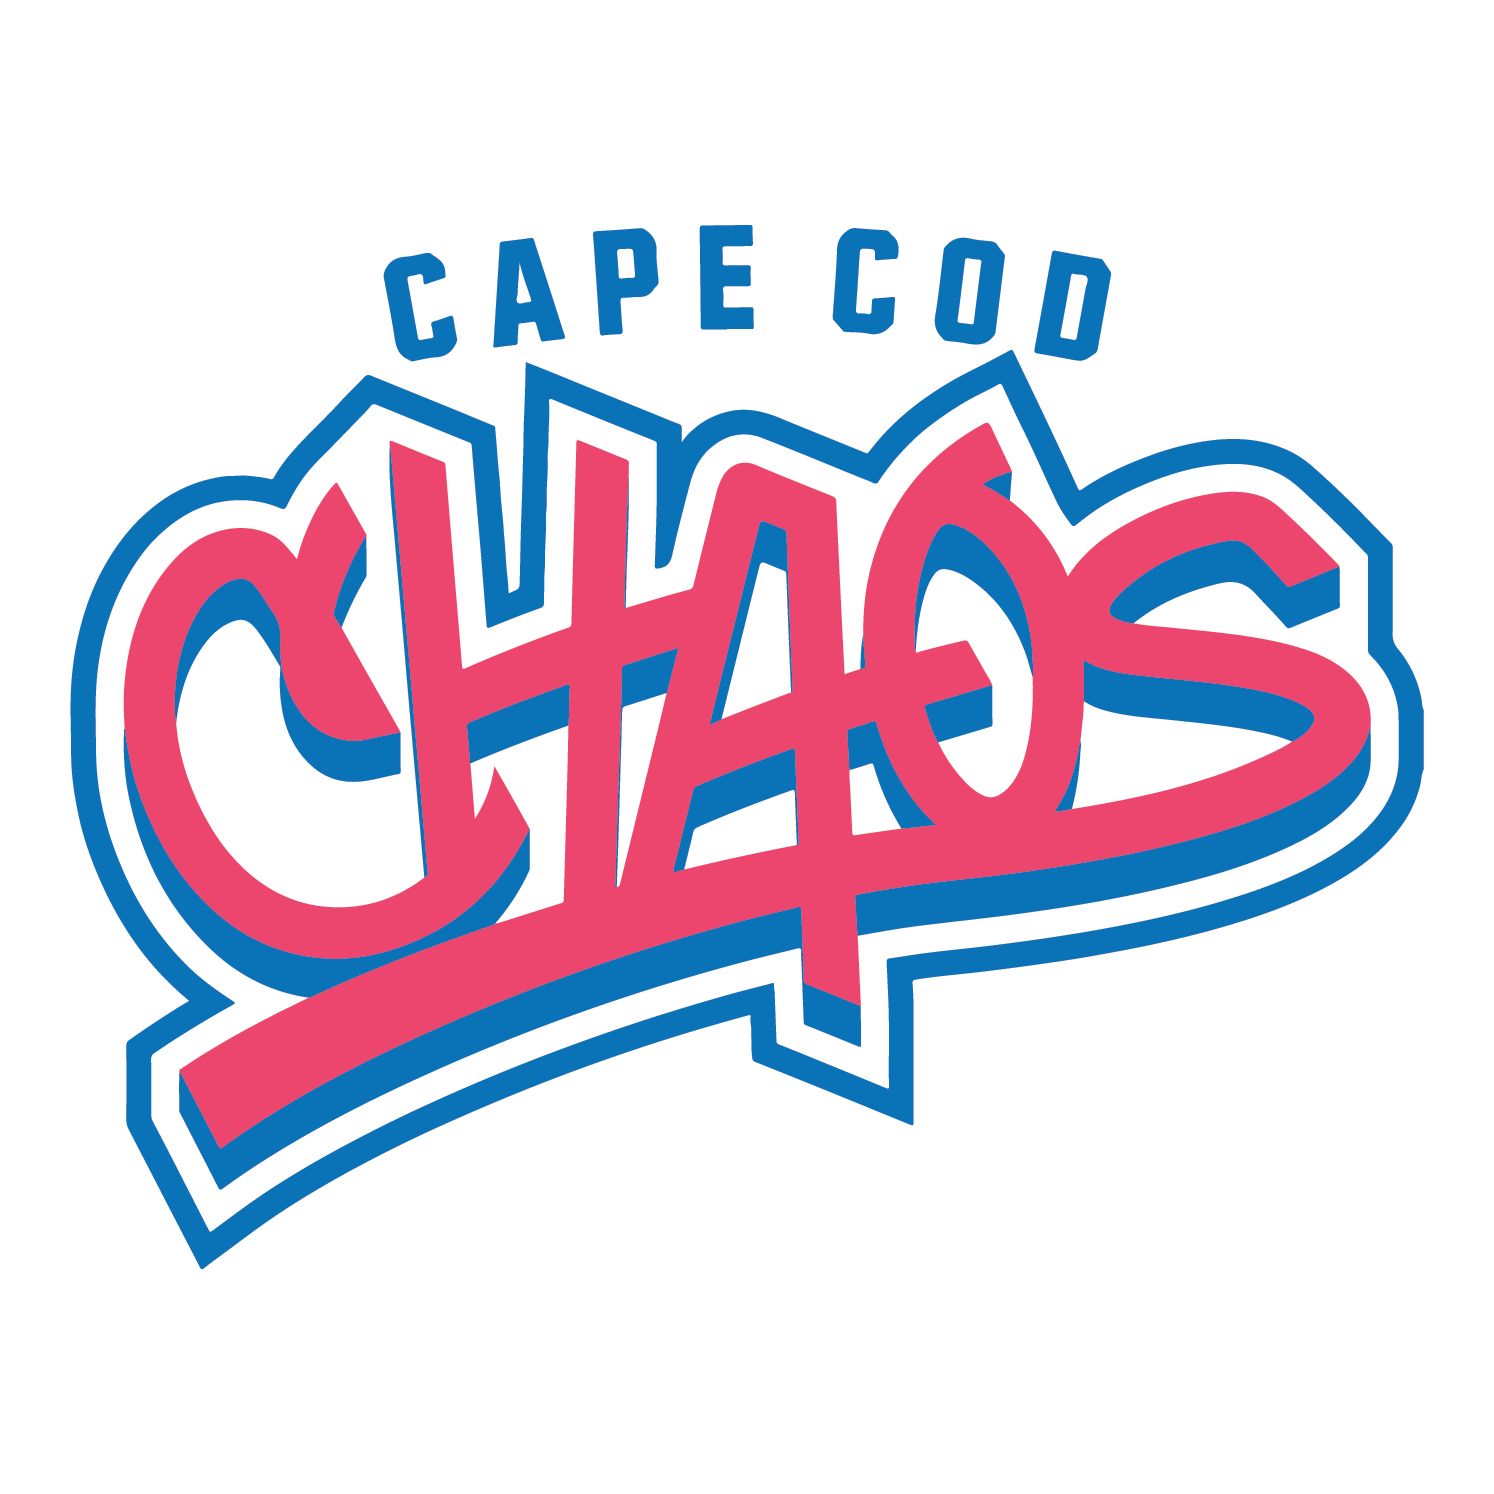 Cape Cod Chaos Baseball